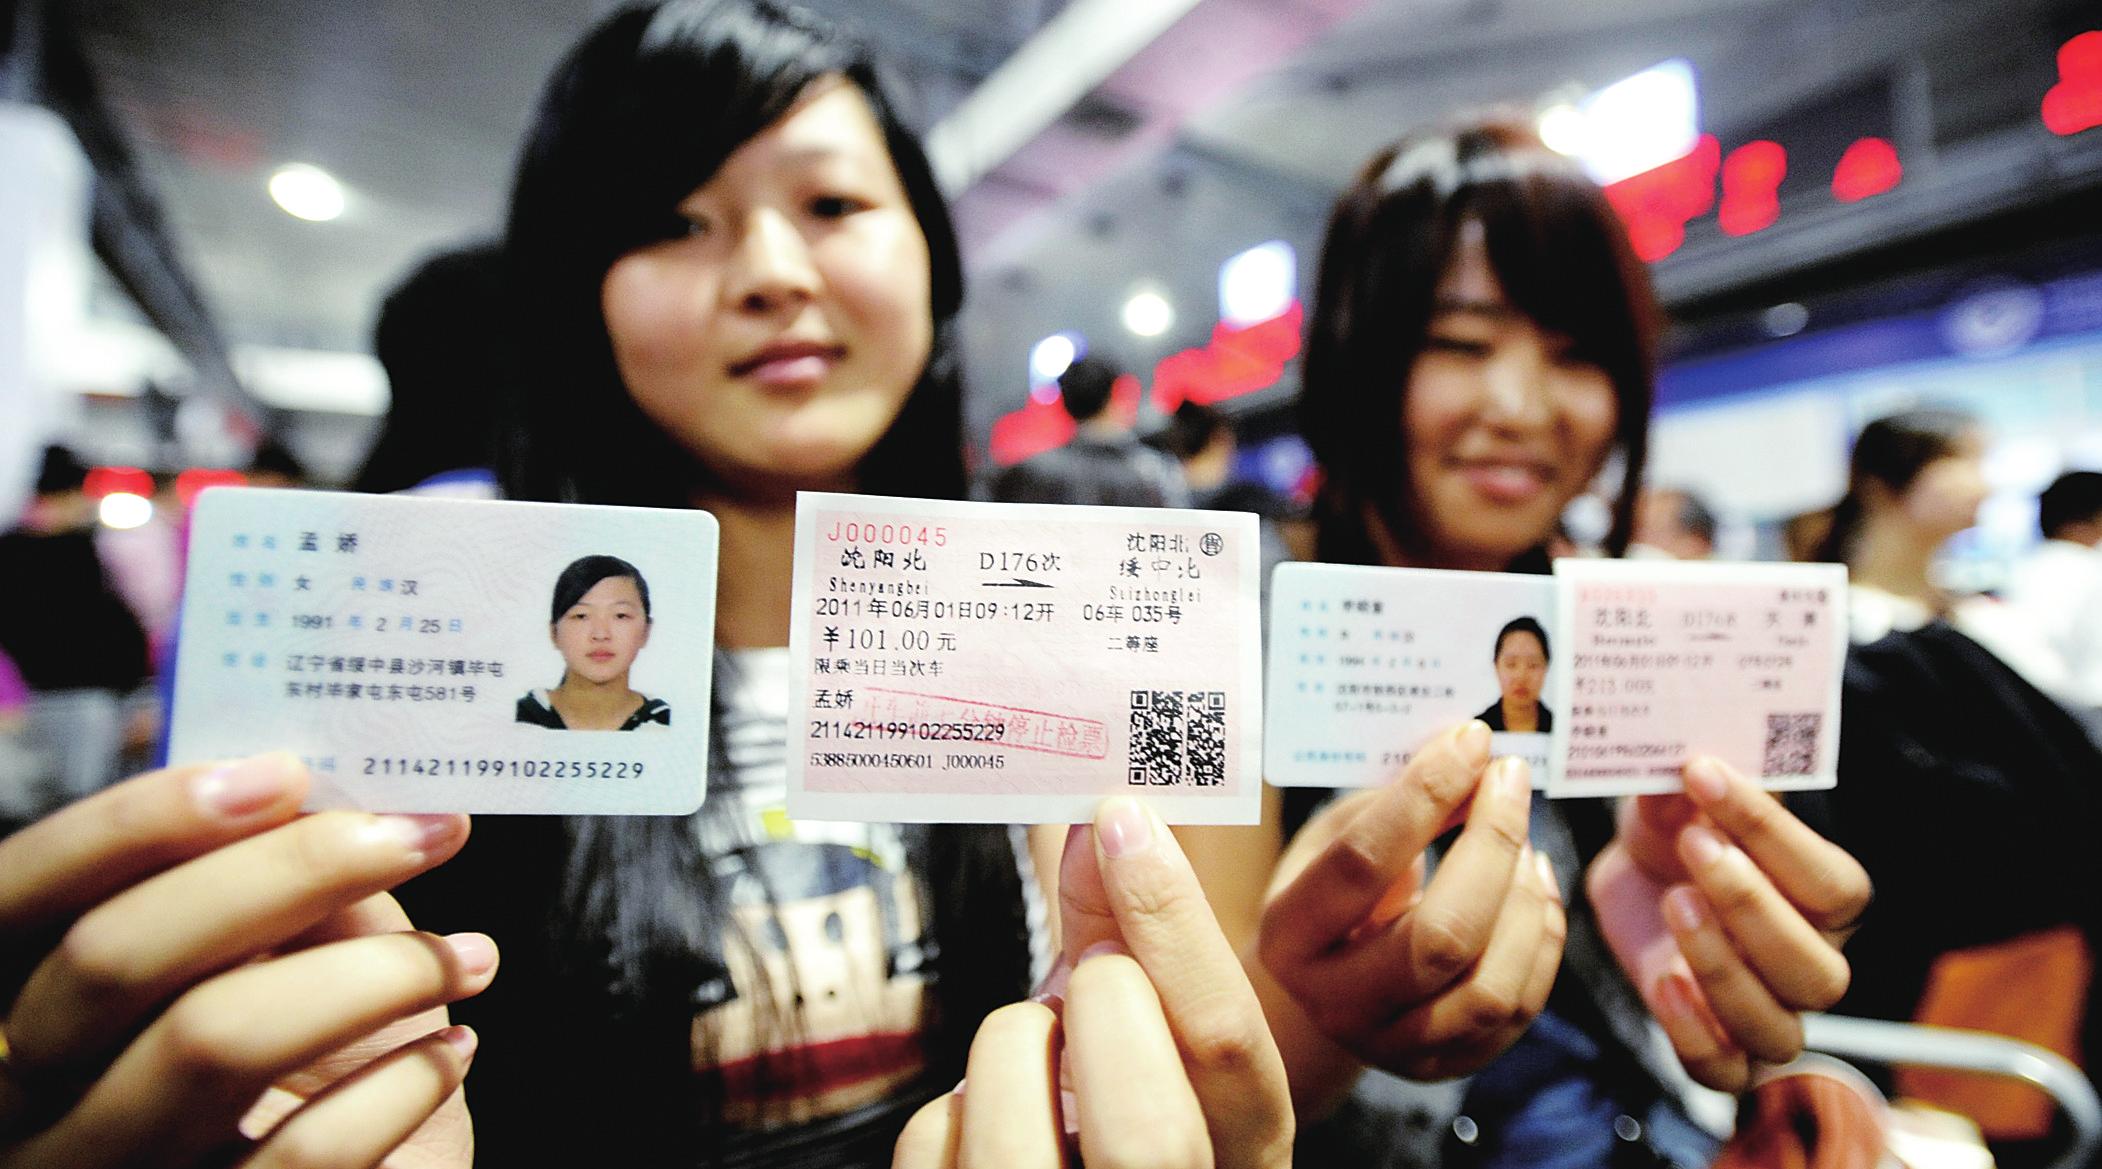 乘坐动车的旅客需持车票和与票面所载身份信息相符的本人有效身份证件